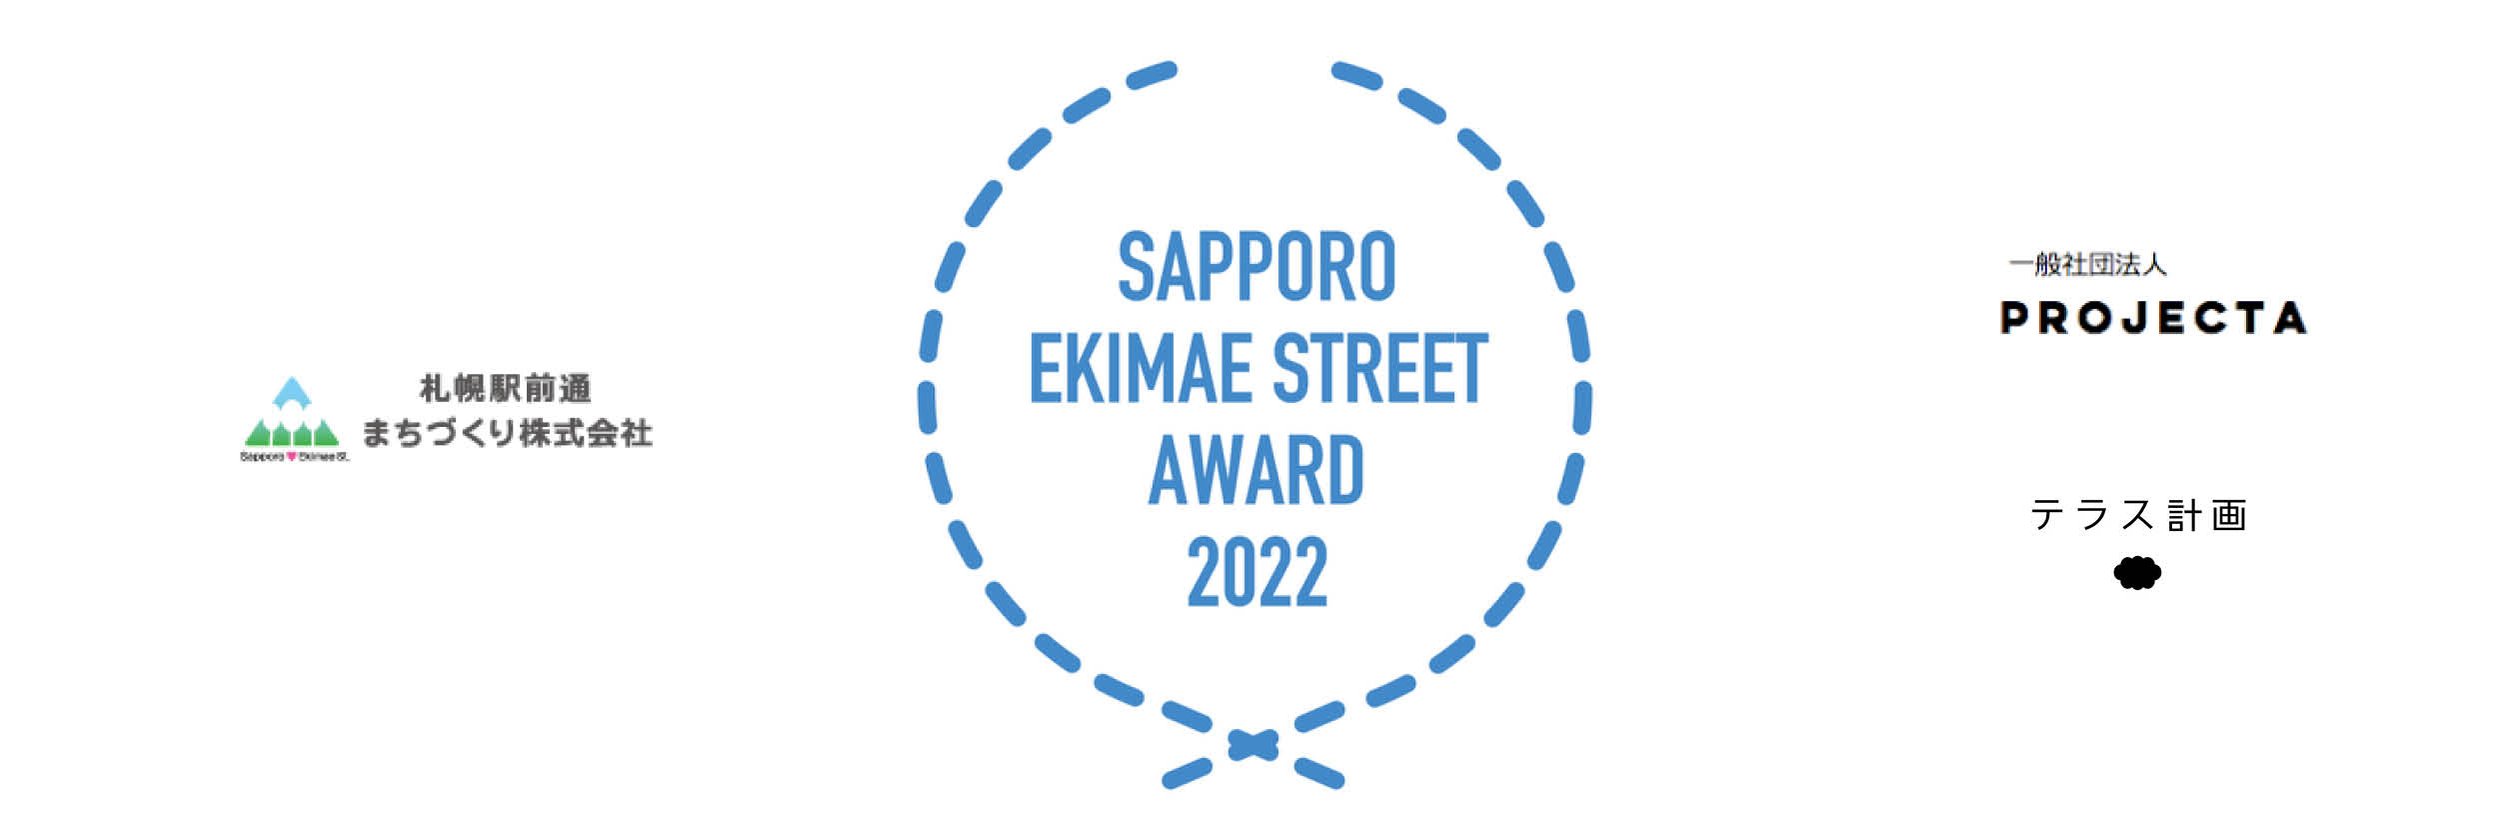 佐藤壮馬 Soma Sato : Sapporo Ekimae Street Award 2022
札幌駅前通アワード受賞作品展